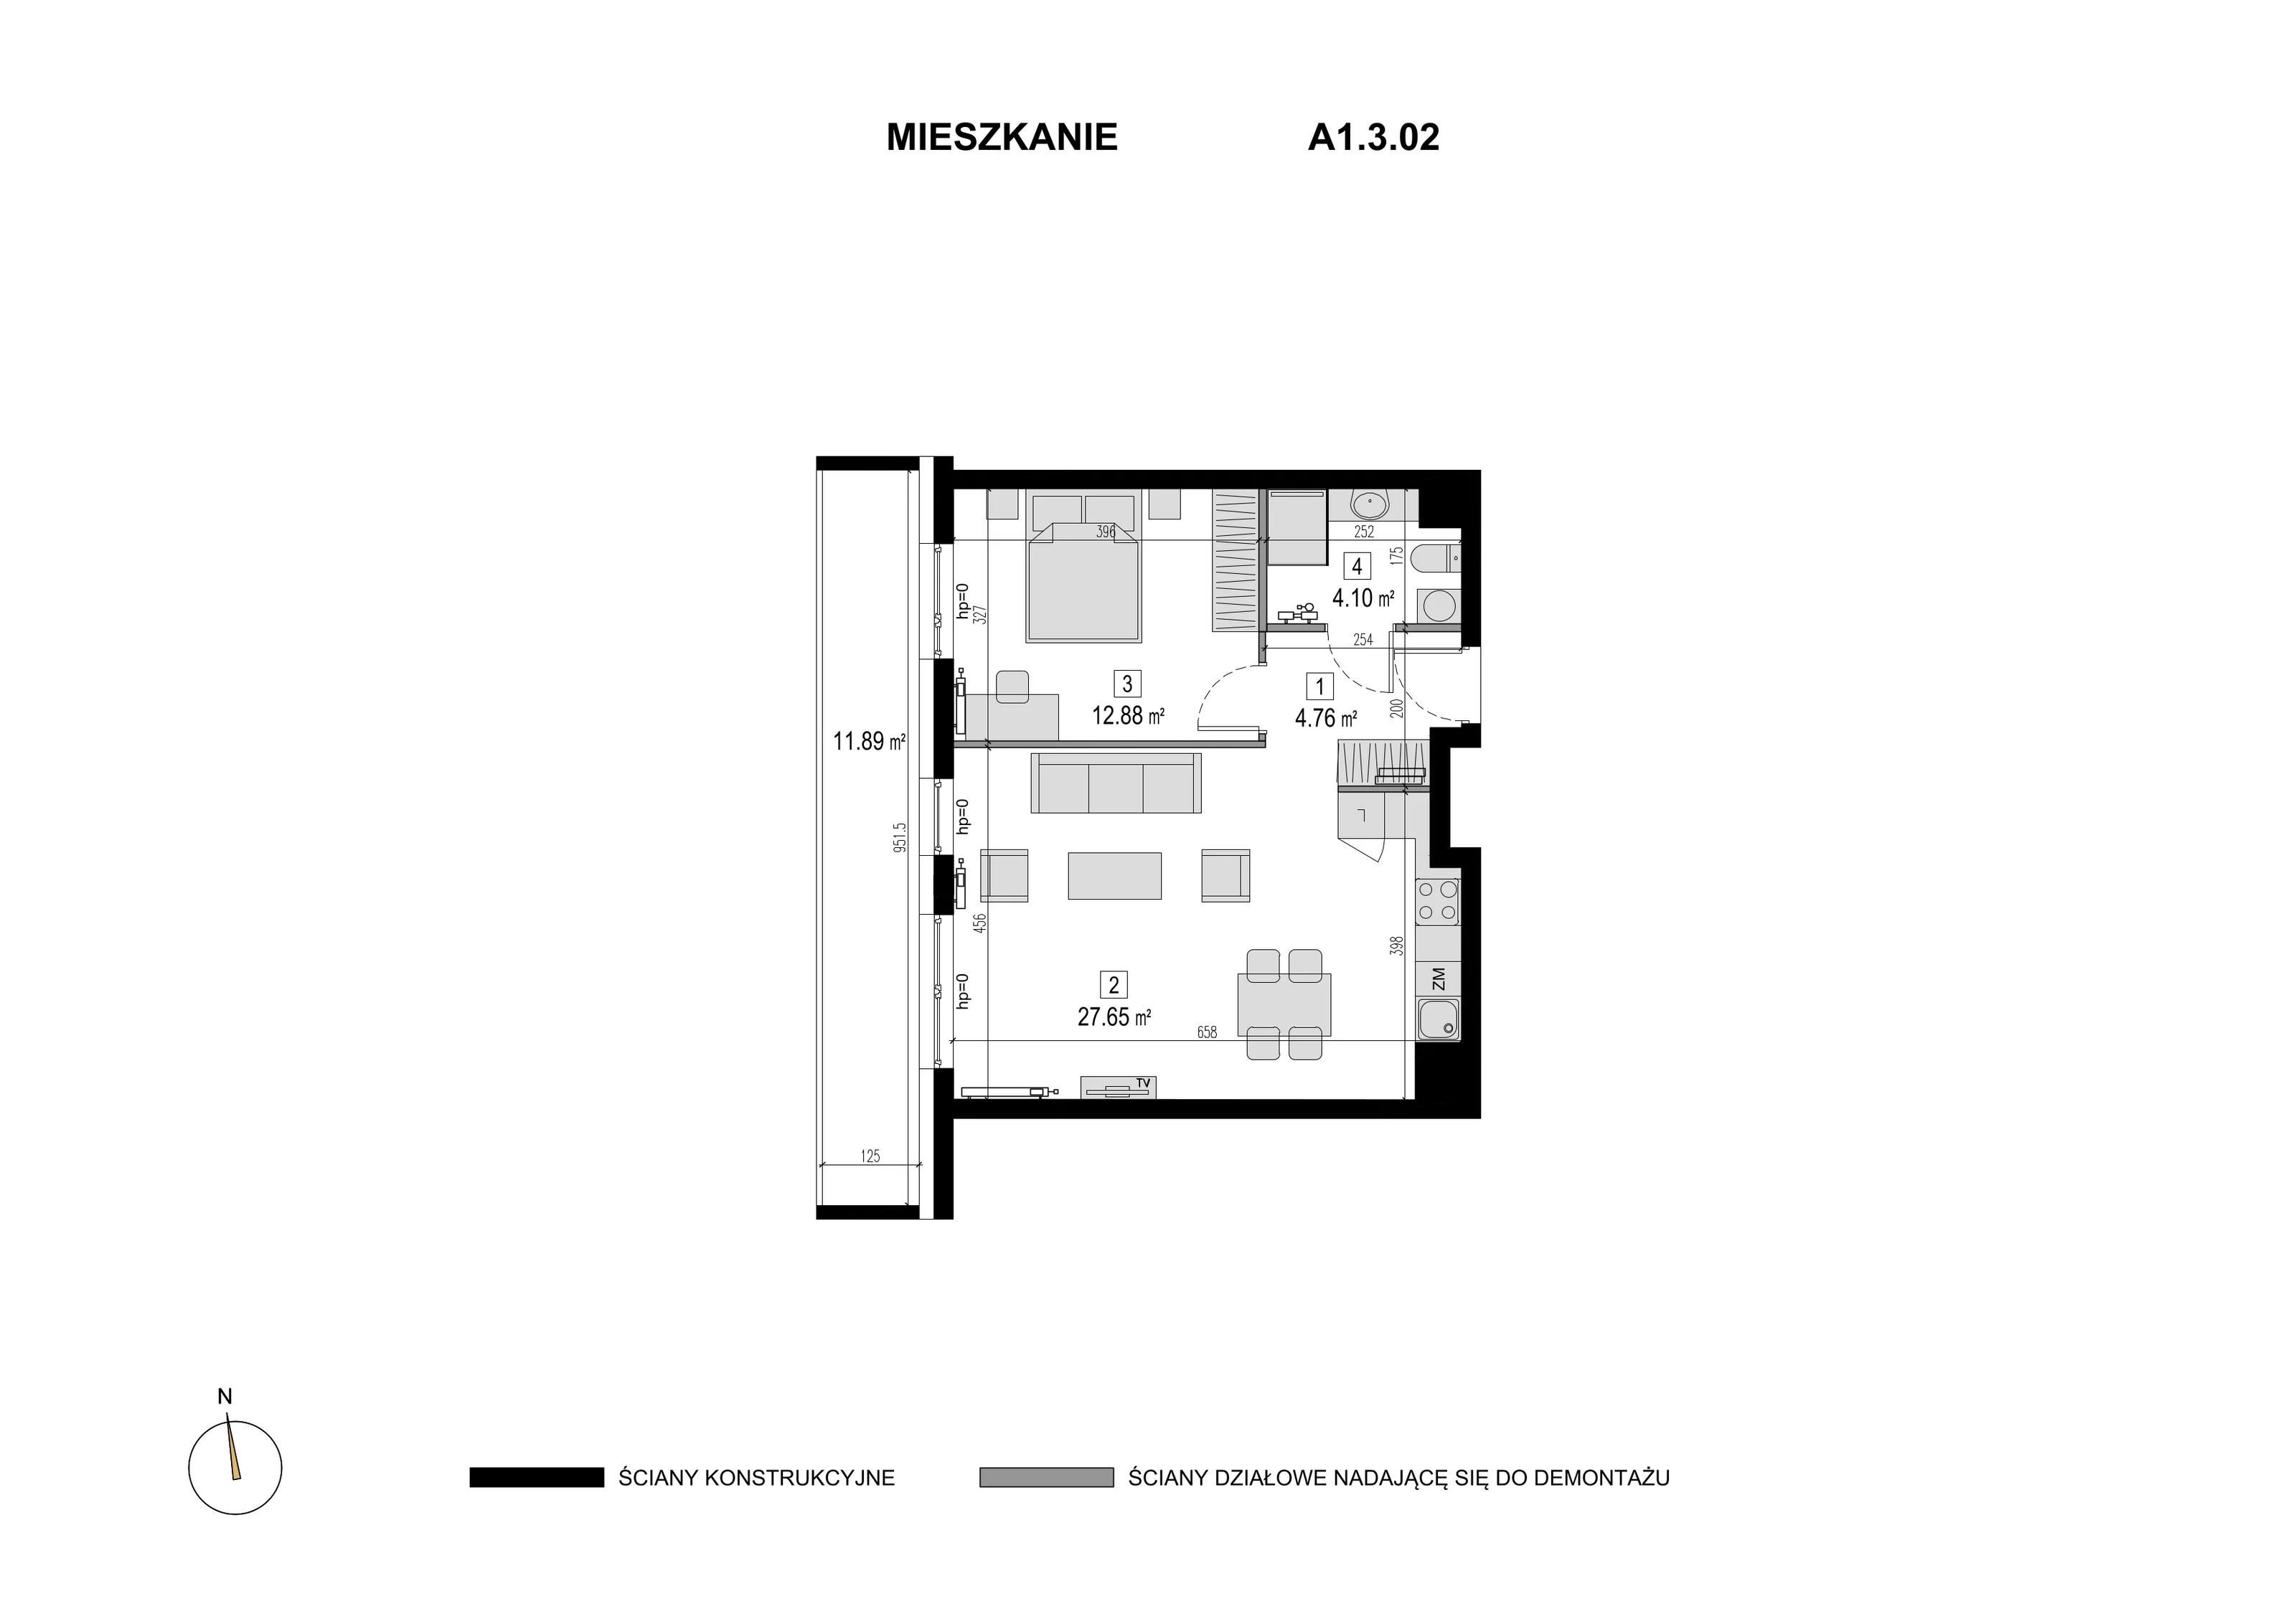 Mieszkanie 49,39 m², piętro 2, oferta nr A1.3.02, Novaforma, Legnica, ul. Chojnowska